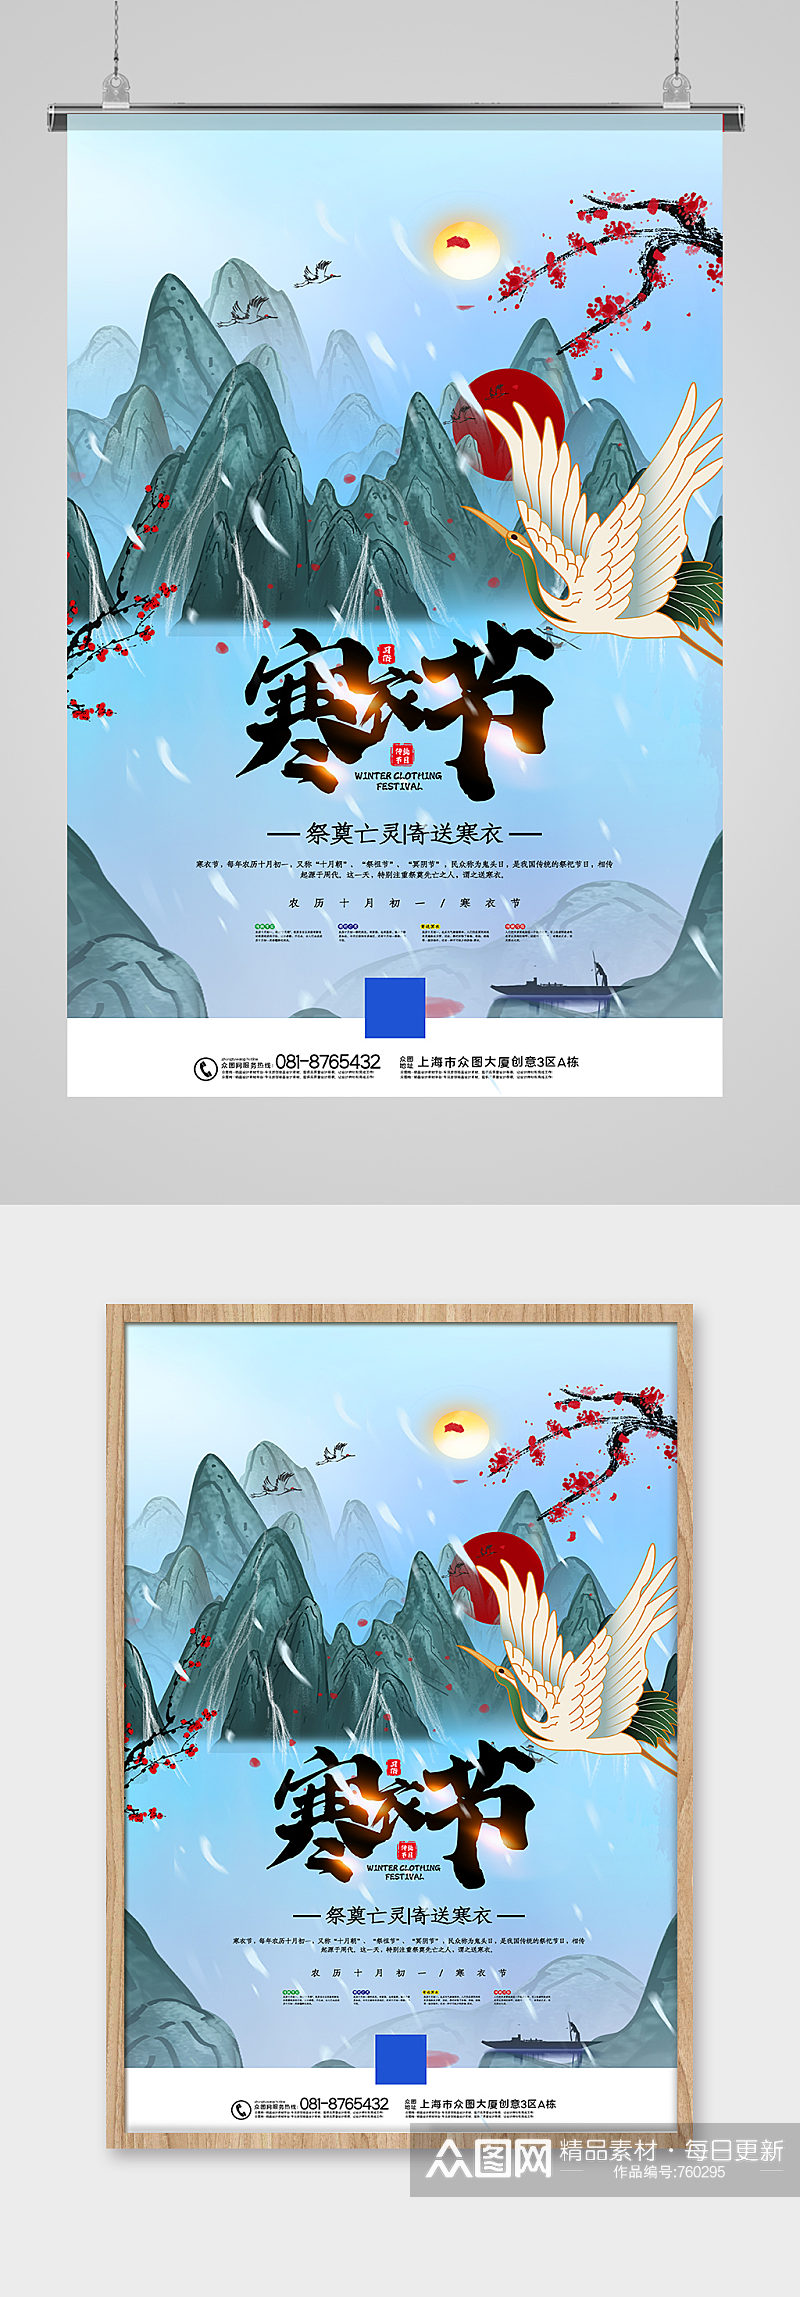 手绘中国风寒衣节海报素材